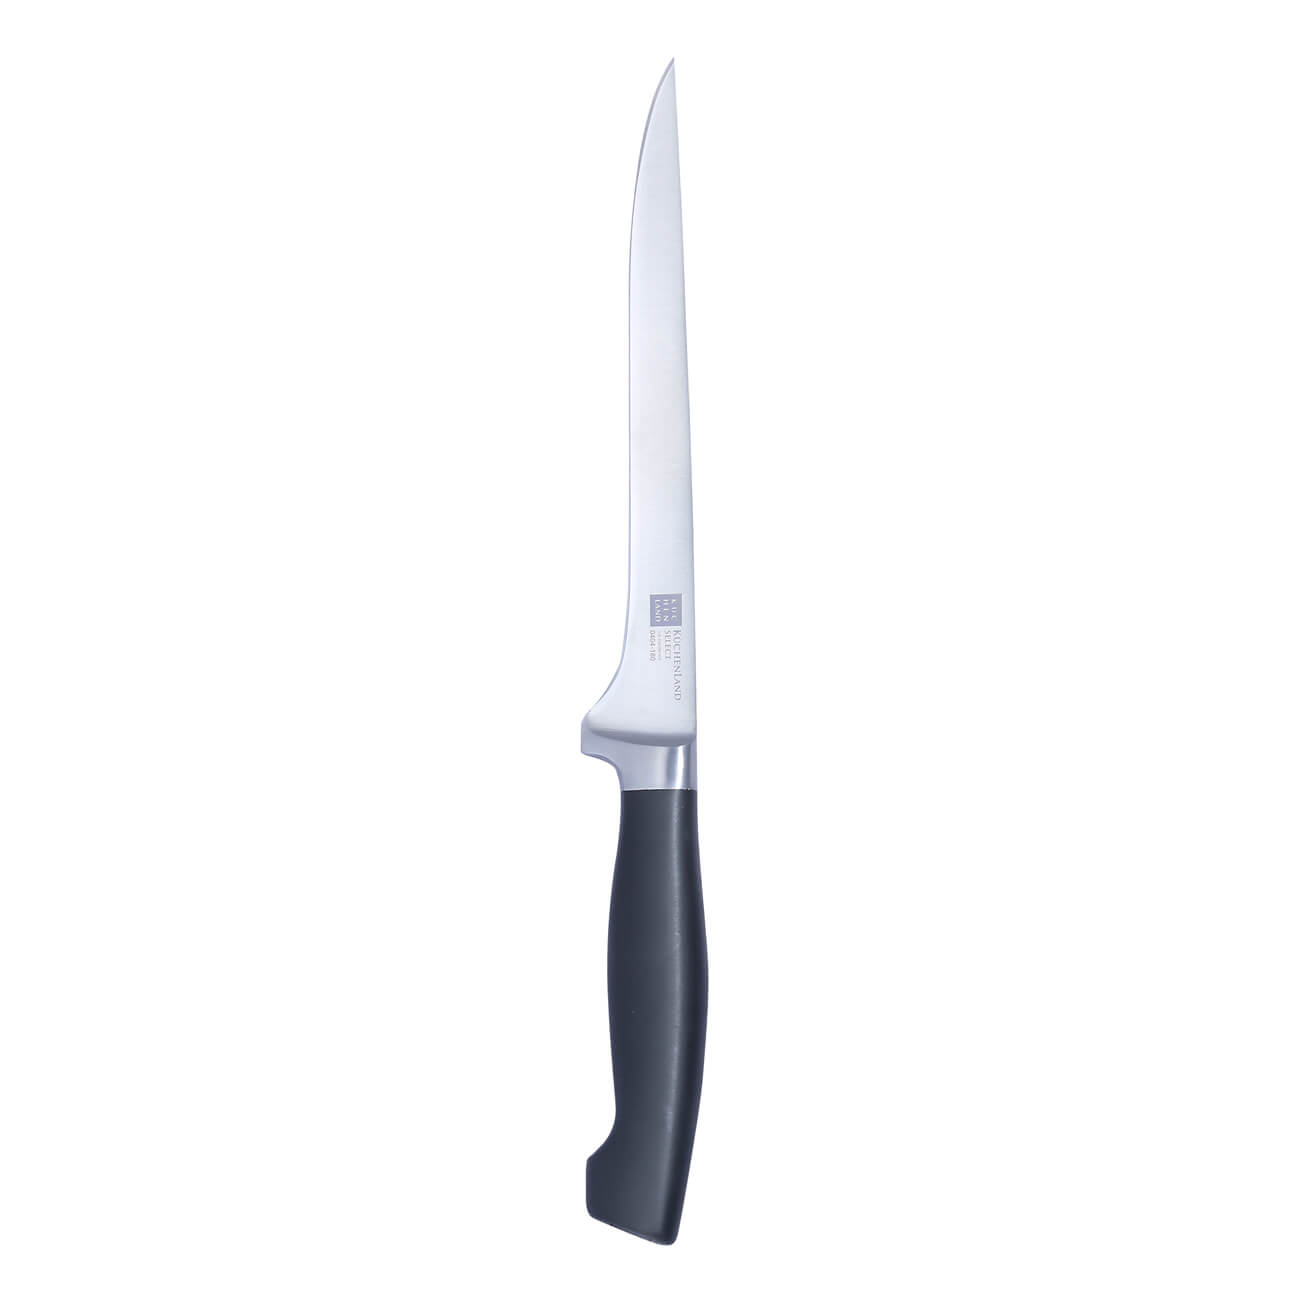 Нож филейный, 18 см, сталь/пластик, Select